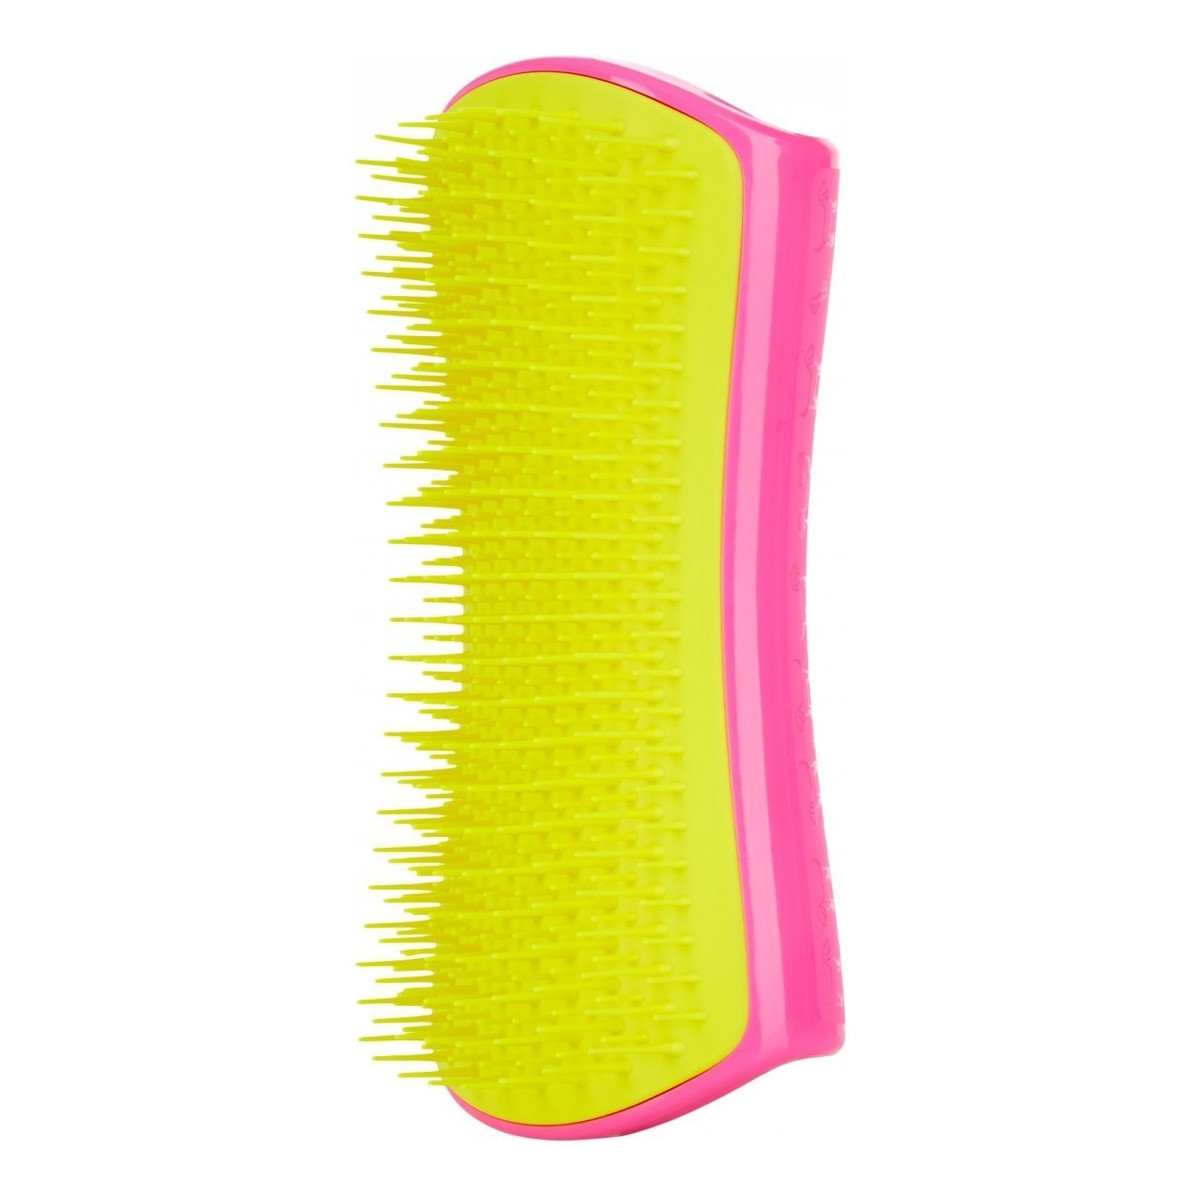 Pet Teezer Large detangling dog grooming brush szczotka do rozplątywania i pielęgnacji sierści pink yellow